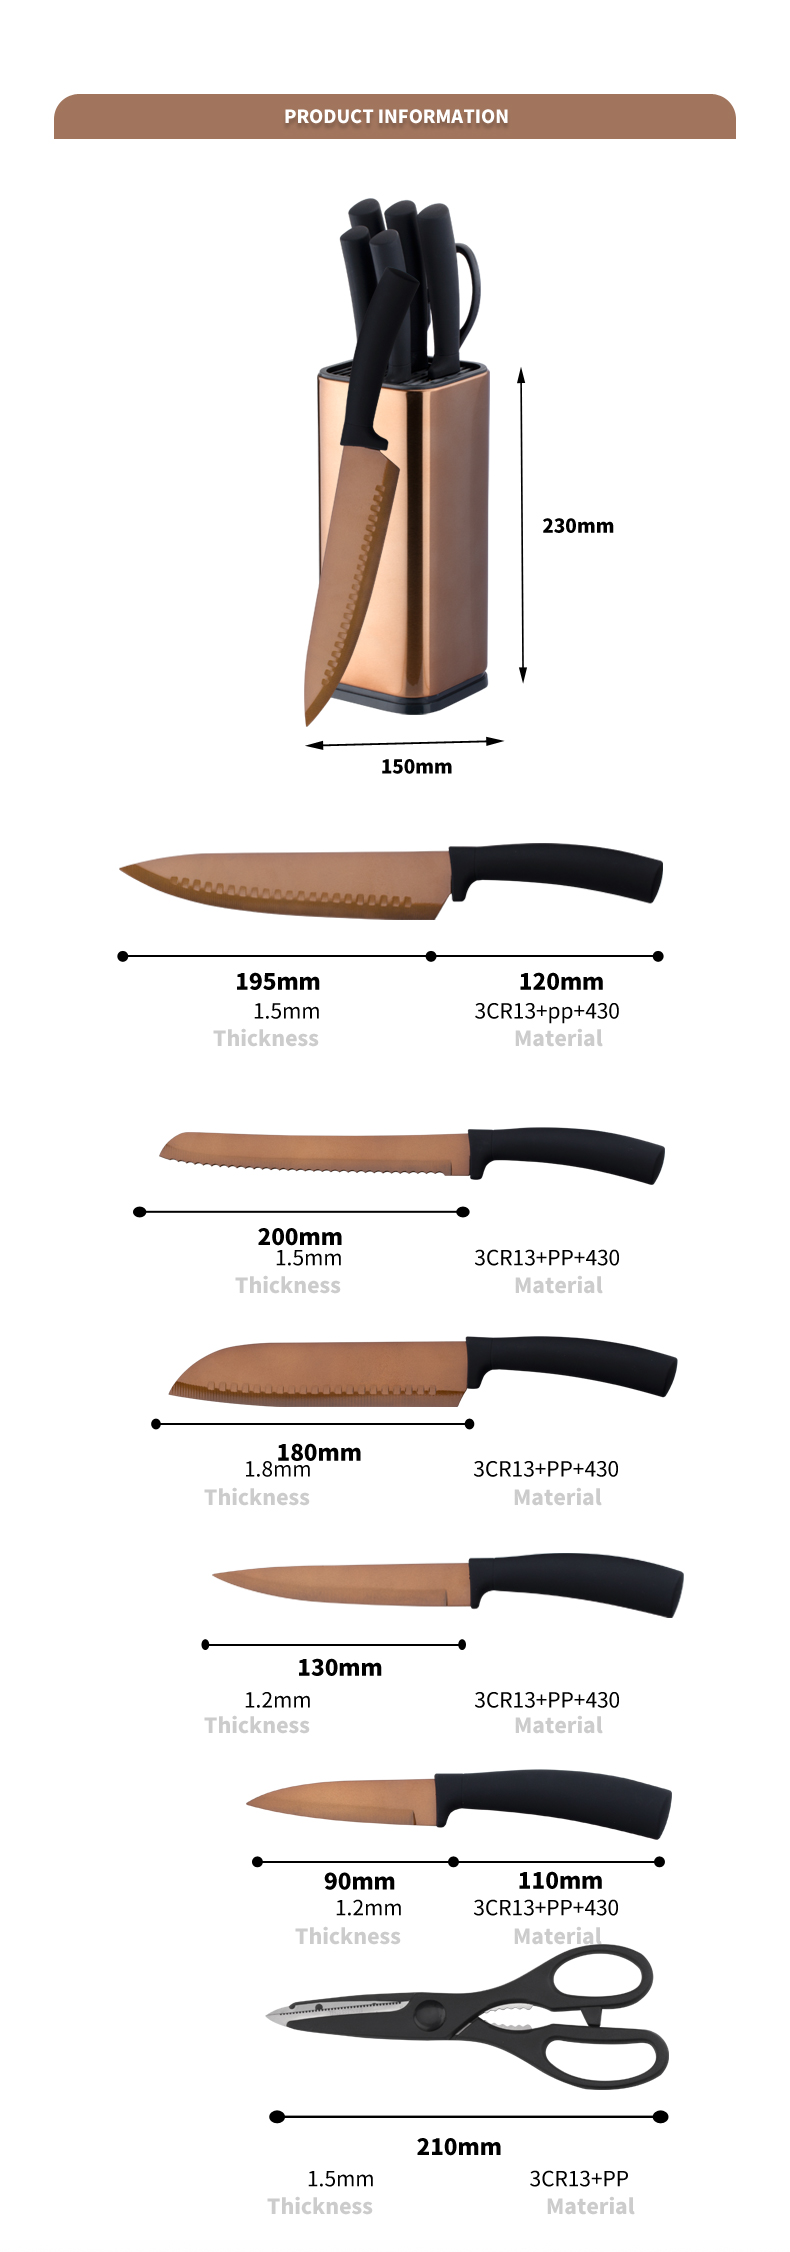 S143-God kvalitet titanbelegg rustfritt stål 5 stk kjøkkenknivsett med kjøkkensaks-ZX | kjøkkenkniv, kjøkkenverktøy, silikonkakeform, skjærebrett, bakeverktøysett, kokkekniv, biffkniv, skjærekniv, verktøykniv, skjærekniv, knivblokk, knivstativ, Santoku-kniv, småbarnskniv, plastkniv, non-stick maling Kniv, fargerik kniv, rustfri stålkniv, boksåpner, flaskeåpner, tesil, rivjern, eggvisper, kjøkkenverktøy i nylon, kjøkkenverktøy i silikon, cookie cutter, kokeknivsett, knivsliper, skreller, kakekniv, ostekniv, pizza Kniv, silikon spatel, silikonskje, mattang, smidd kniv, kjøkkensaks, kakebakekniver, kokekniver for barn, utskjæringskniv